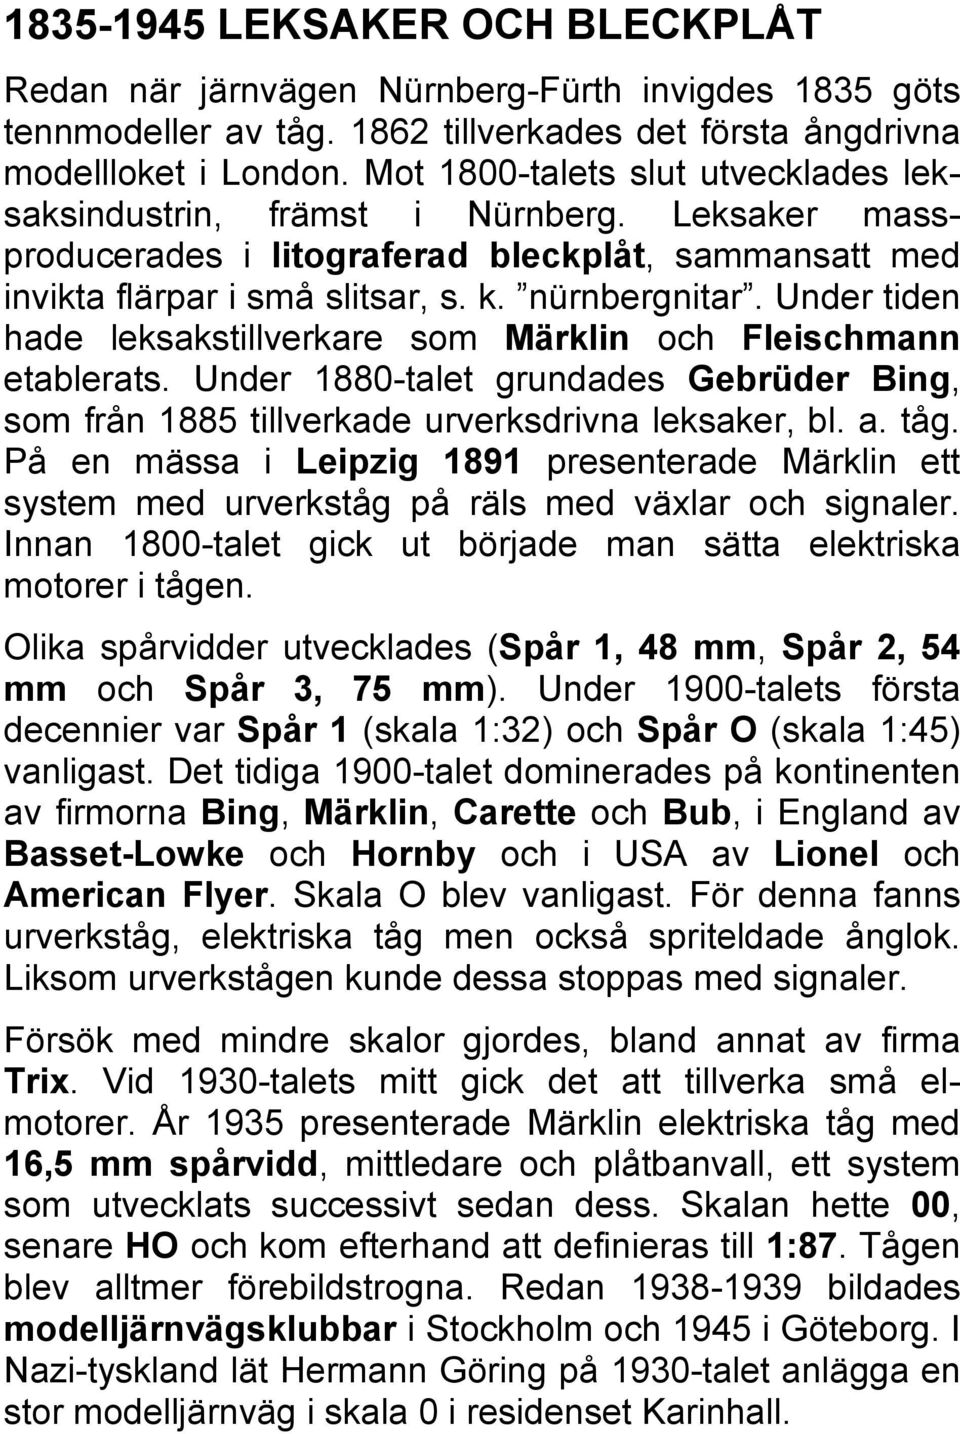 Under tiden hade leksakstillverkare som Märklin och Fleischmann etablerats. Under 1880-talet grundades Gebrüder Bing, som från 1885 tillverkade urverksdrivna leksaker, bl. a. tåg.